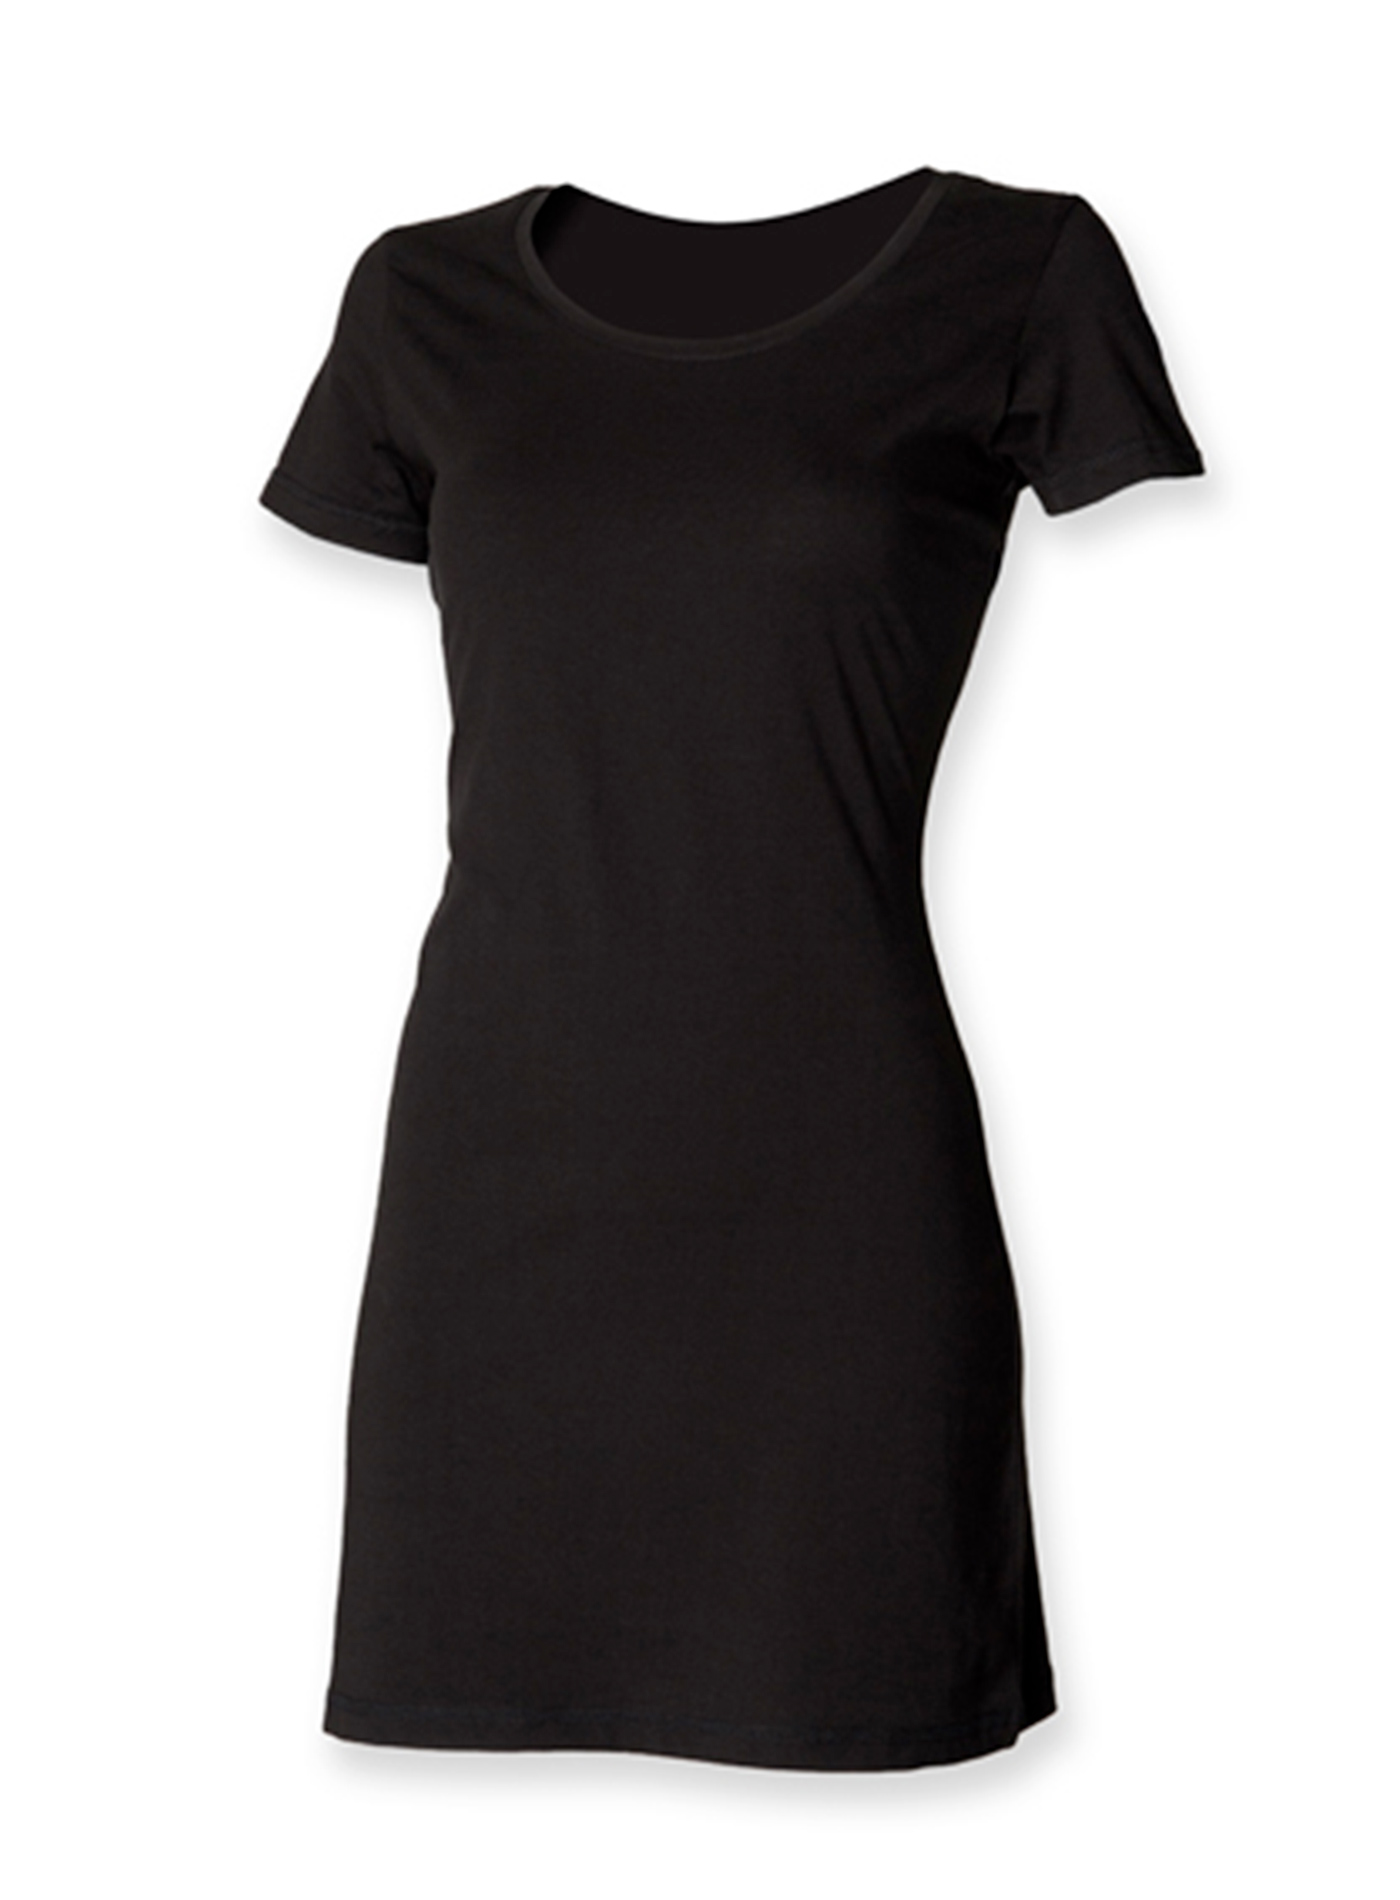 Dámské tričkové šaty - černá XL